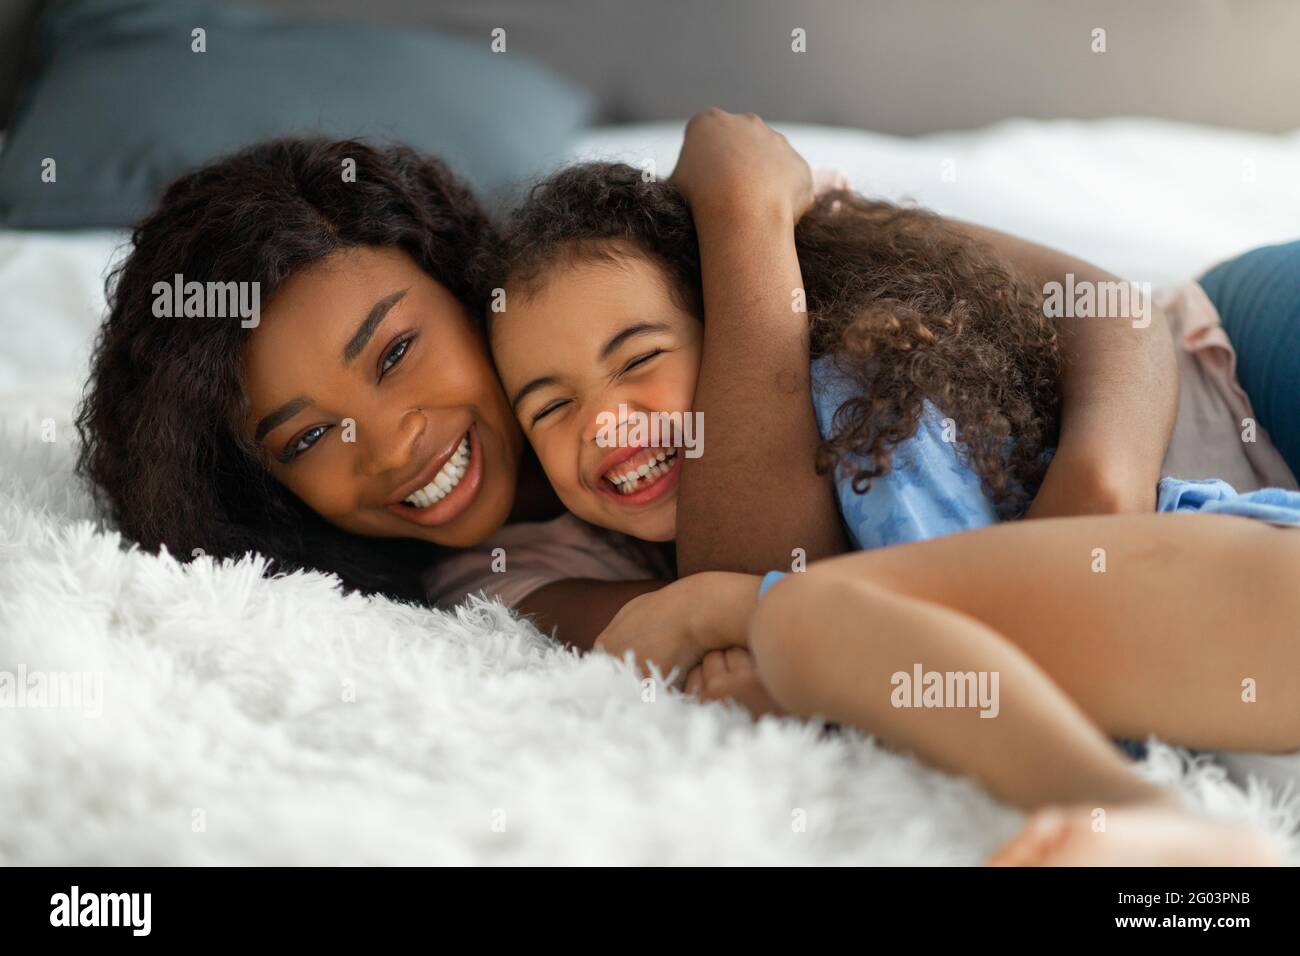 Parent amour enfant. Bonne jeune femme noire embrassant sa petite fille sur le lit, mignonne fille riant et appréciant la hug Banque D'Images